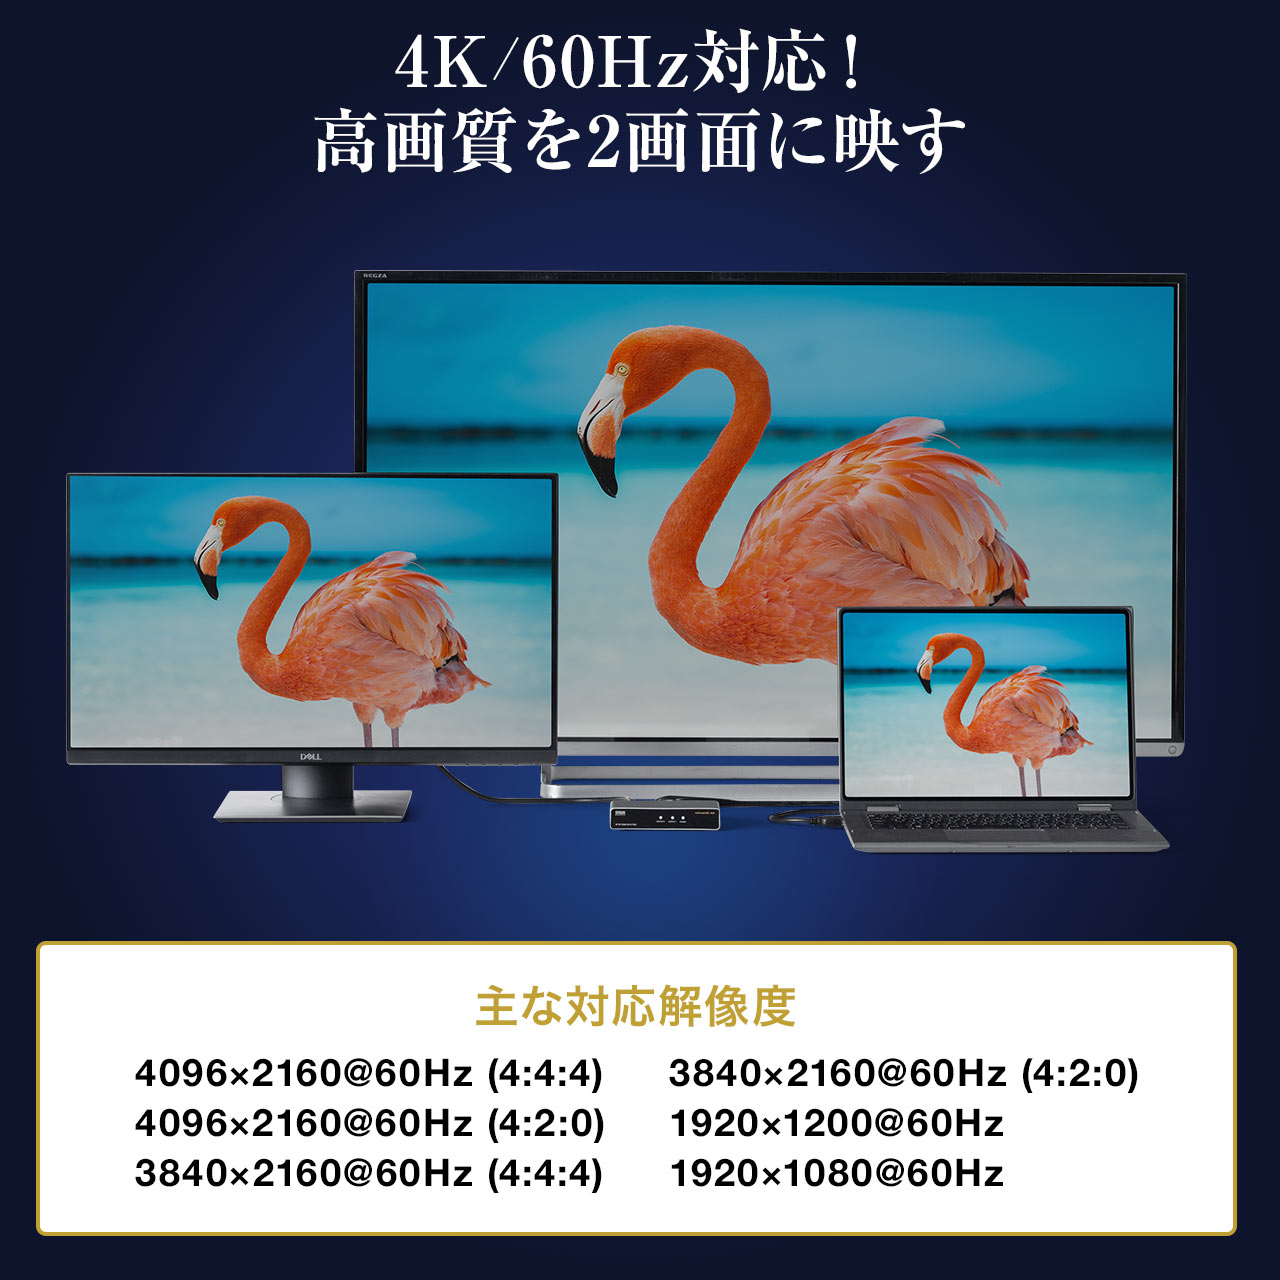 yrWlXZ[zHDMIz 1 2o Xvb^[ 4K/60Hz HDRΉ HDCP2.2 400-VGA016